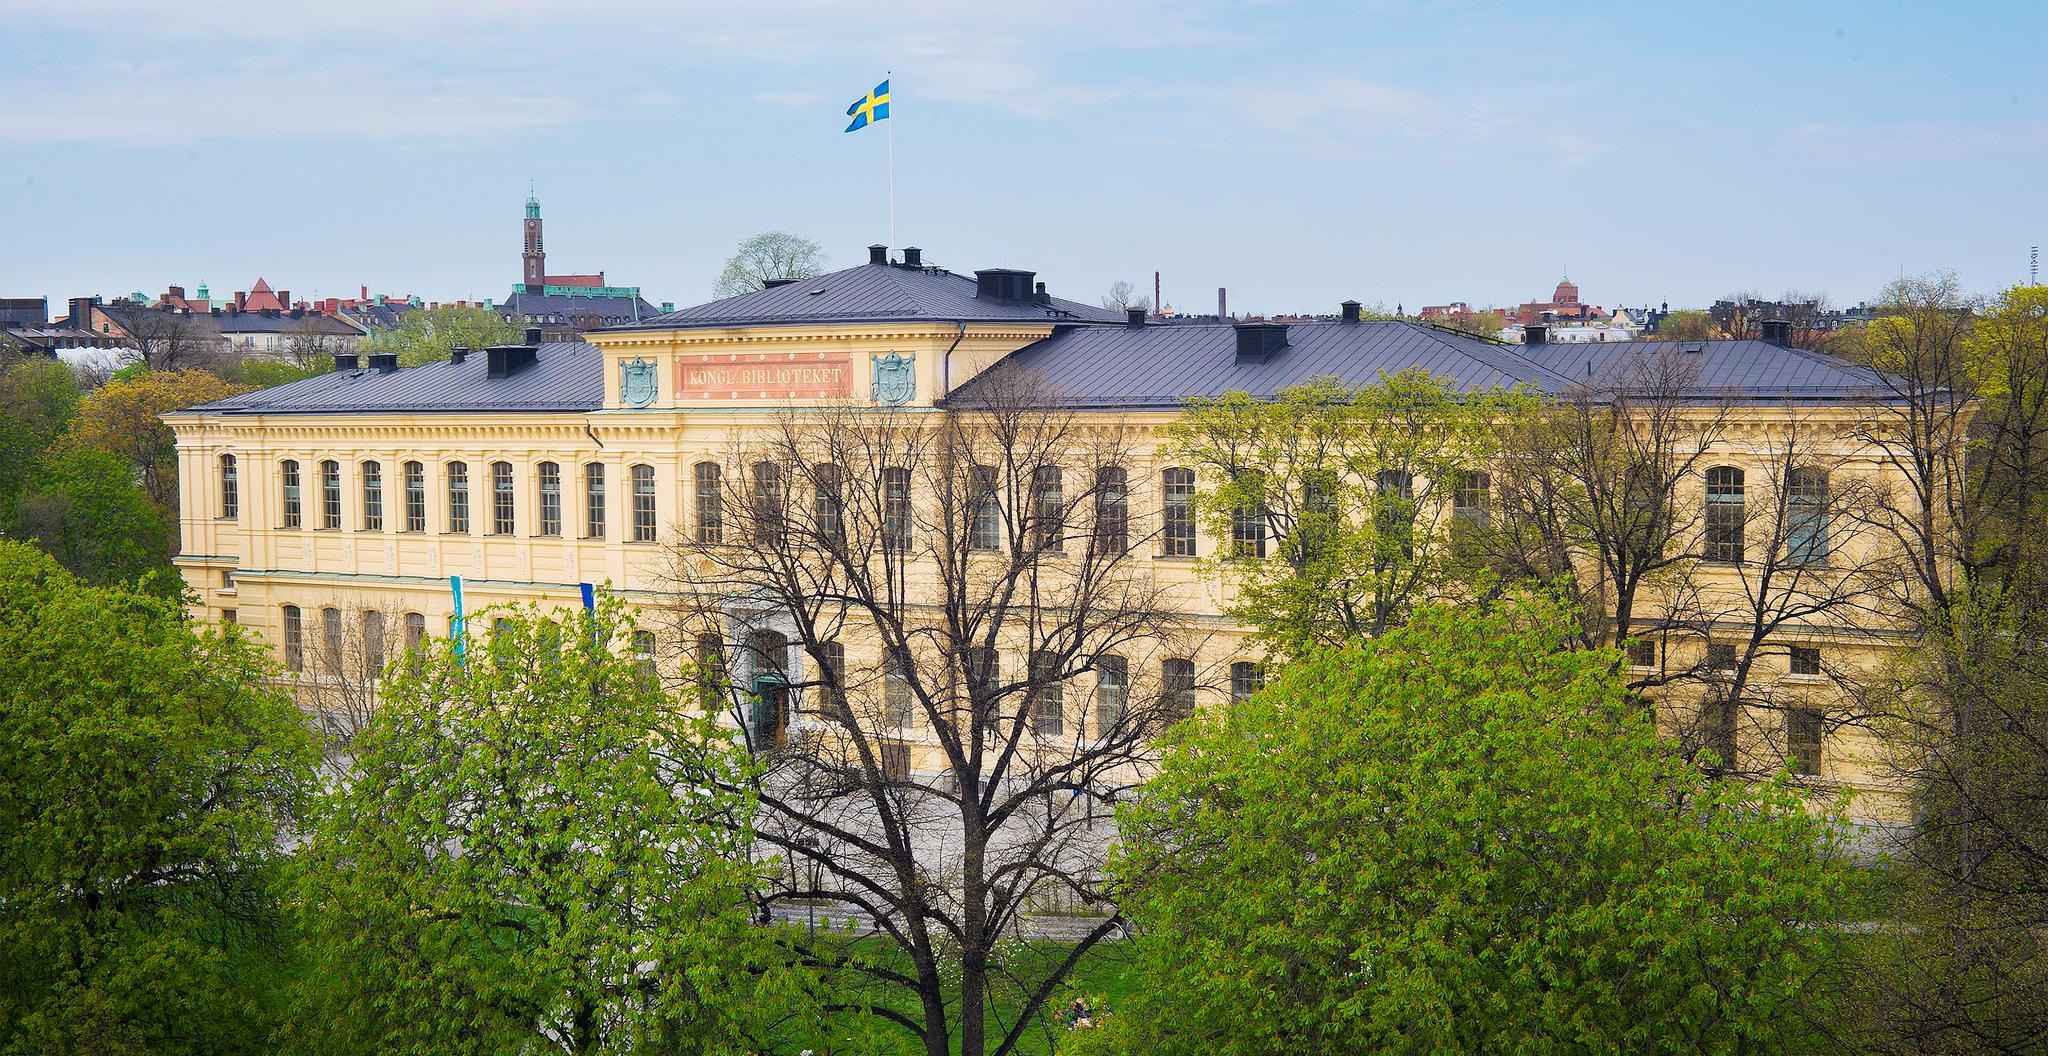 Kungliga bibliotekets gula byggnad sedd uppifrån. Från tacket vajar en svensk flagga och runt omkring finns parken Humlegården.